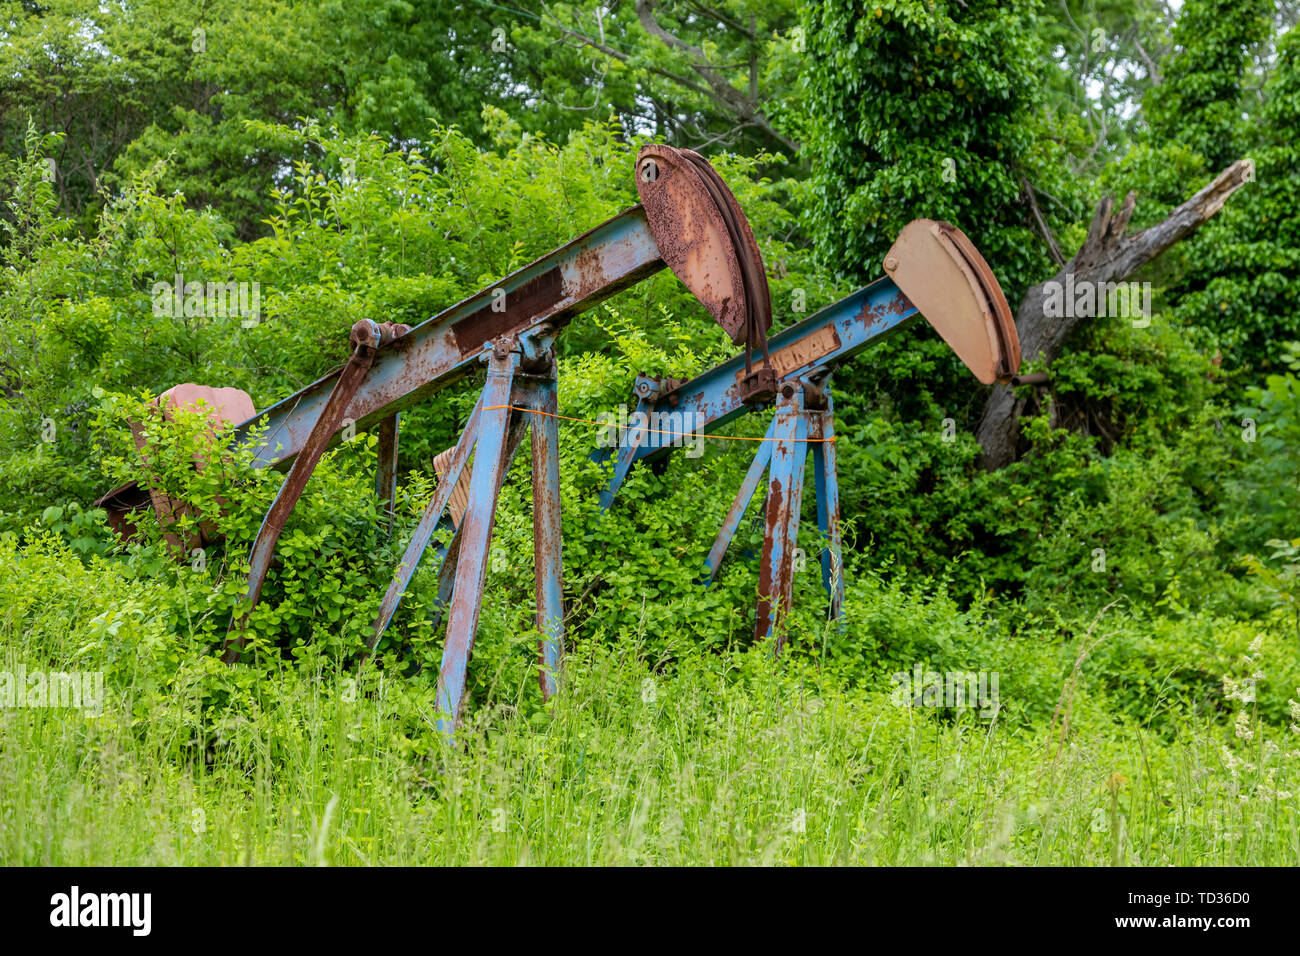 Mt Vernon, Illinois - Vieux, chevalets de rouille dans la région de production de pétrole du bassin de l'Illinois, qui comprend le sud de l'Illinois, dans l'ouest du Kentucky et de l'ouest Banque D'Images